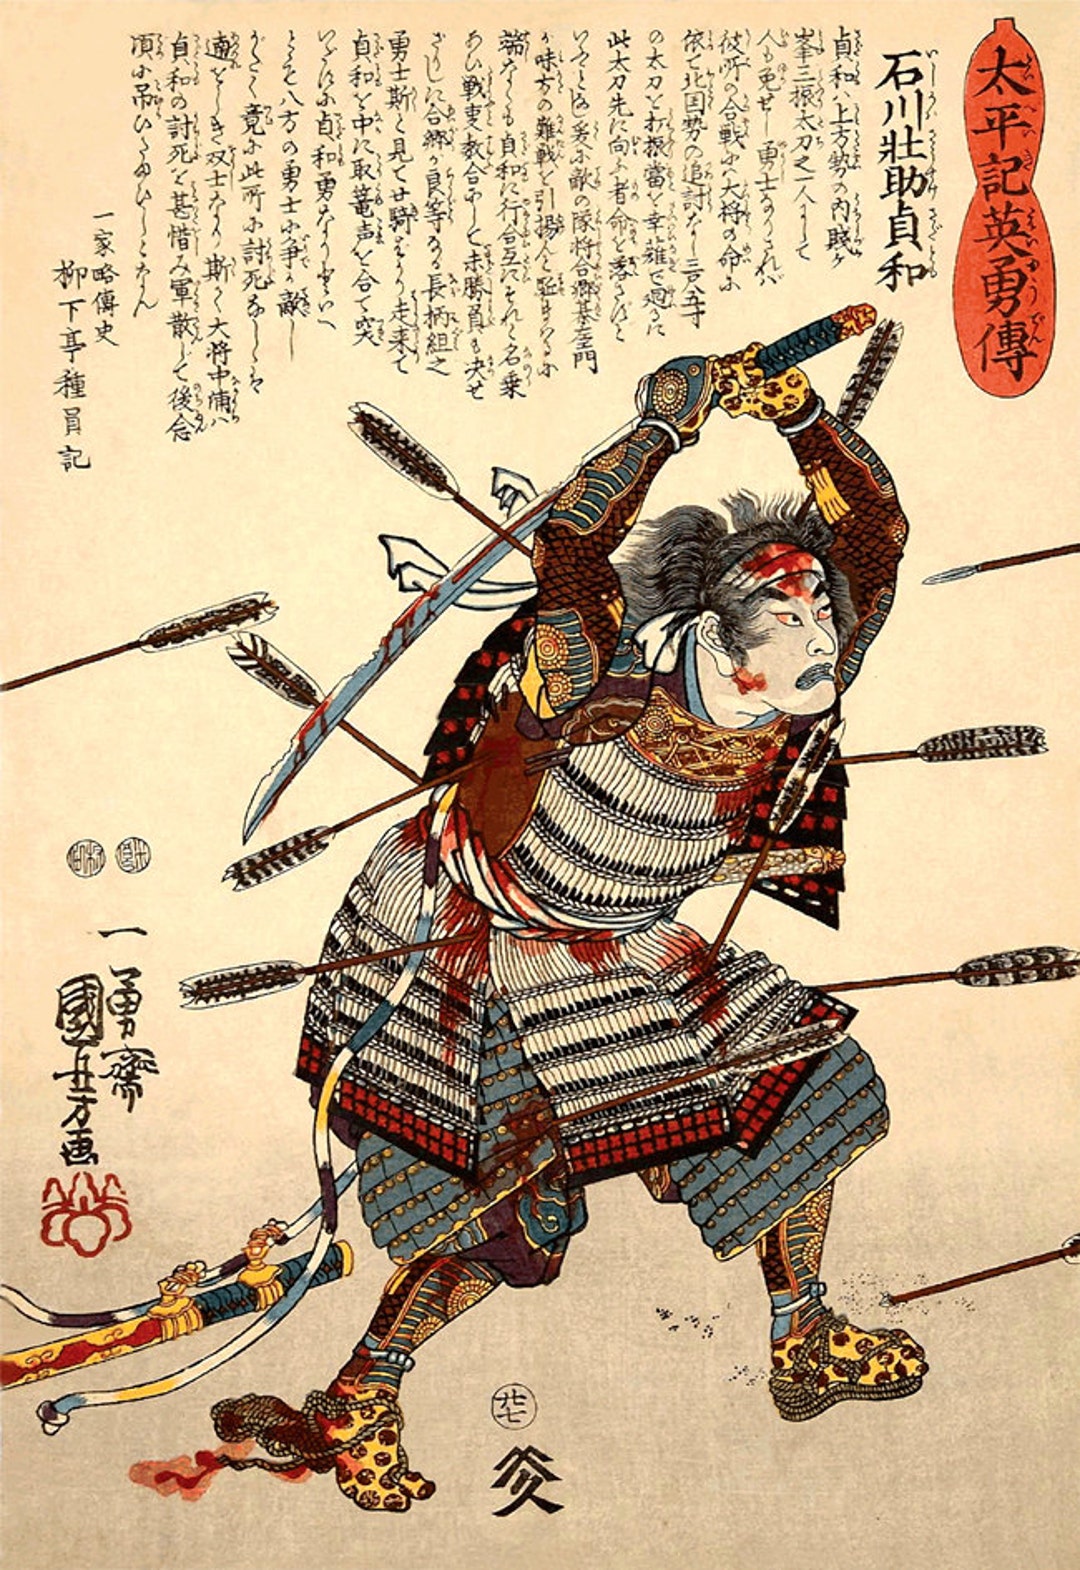 Japanese samurai warriors art prints Ishikawa Sôsuke - Etsy 日本